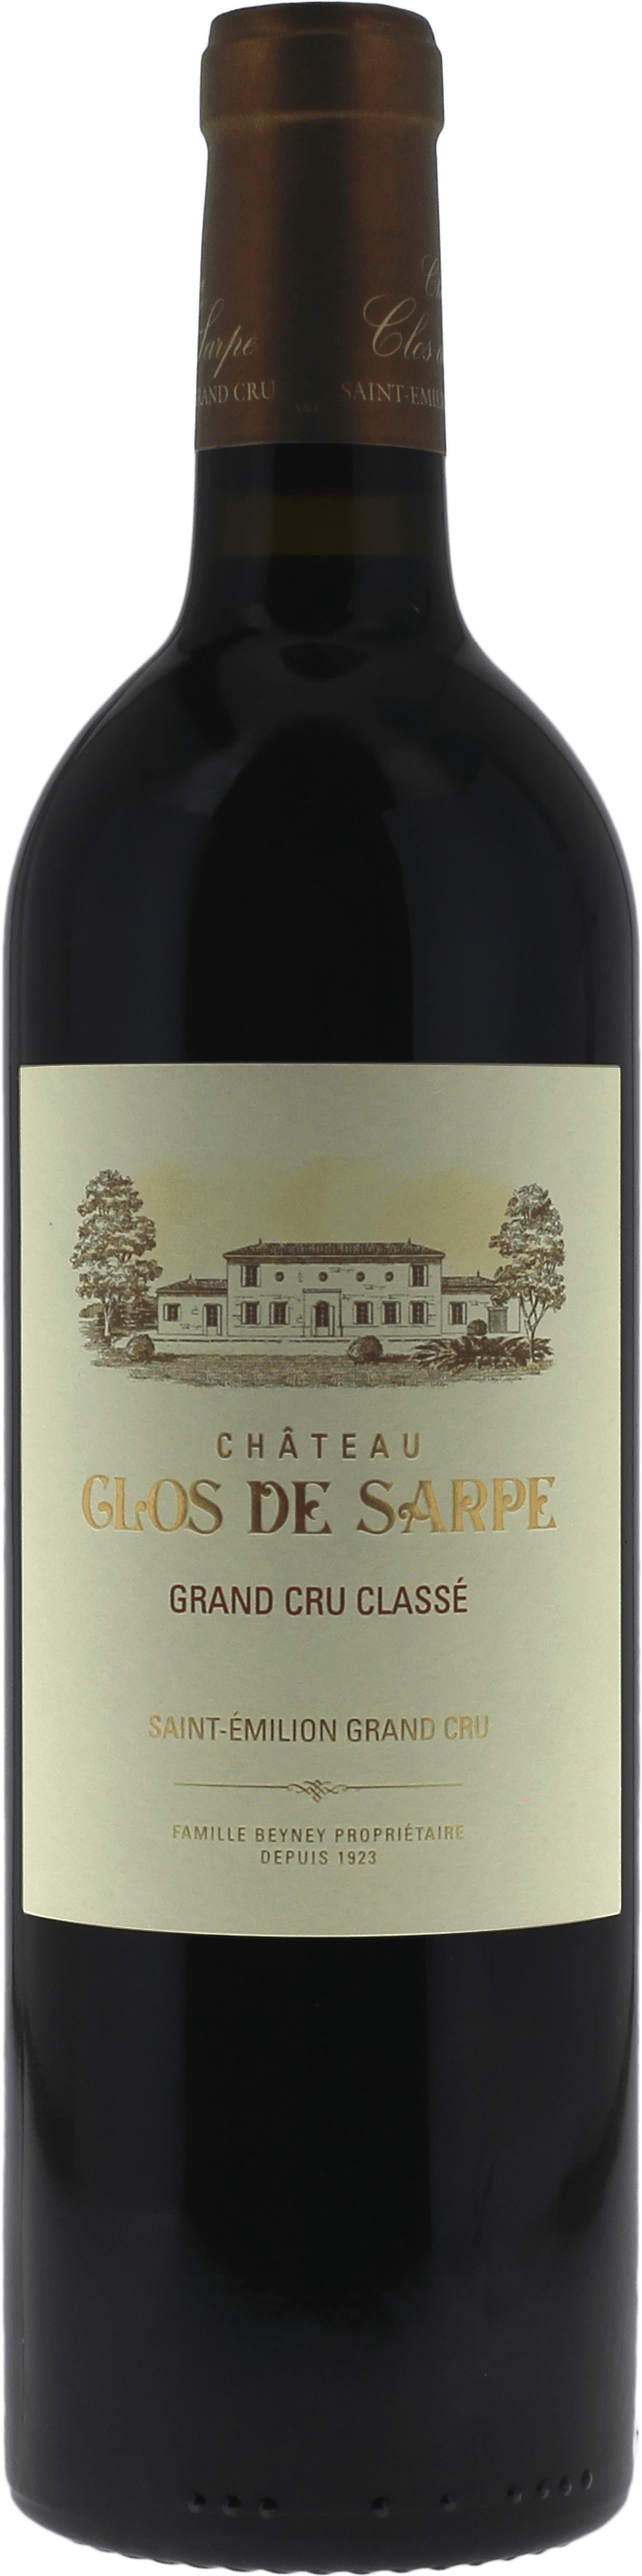 Clos de sarpe 2013 Grand Cru Class Saint-Emilion, Bordeaux rouge